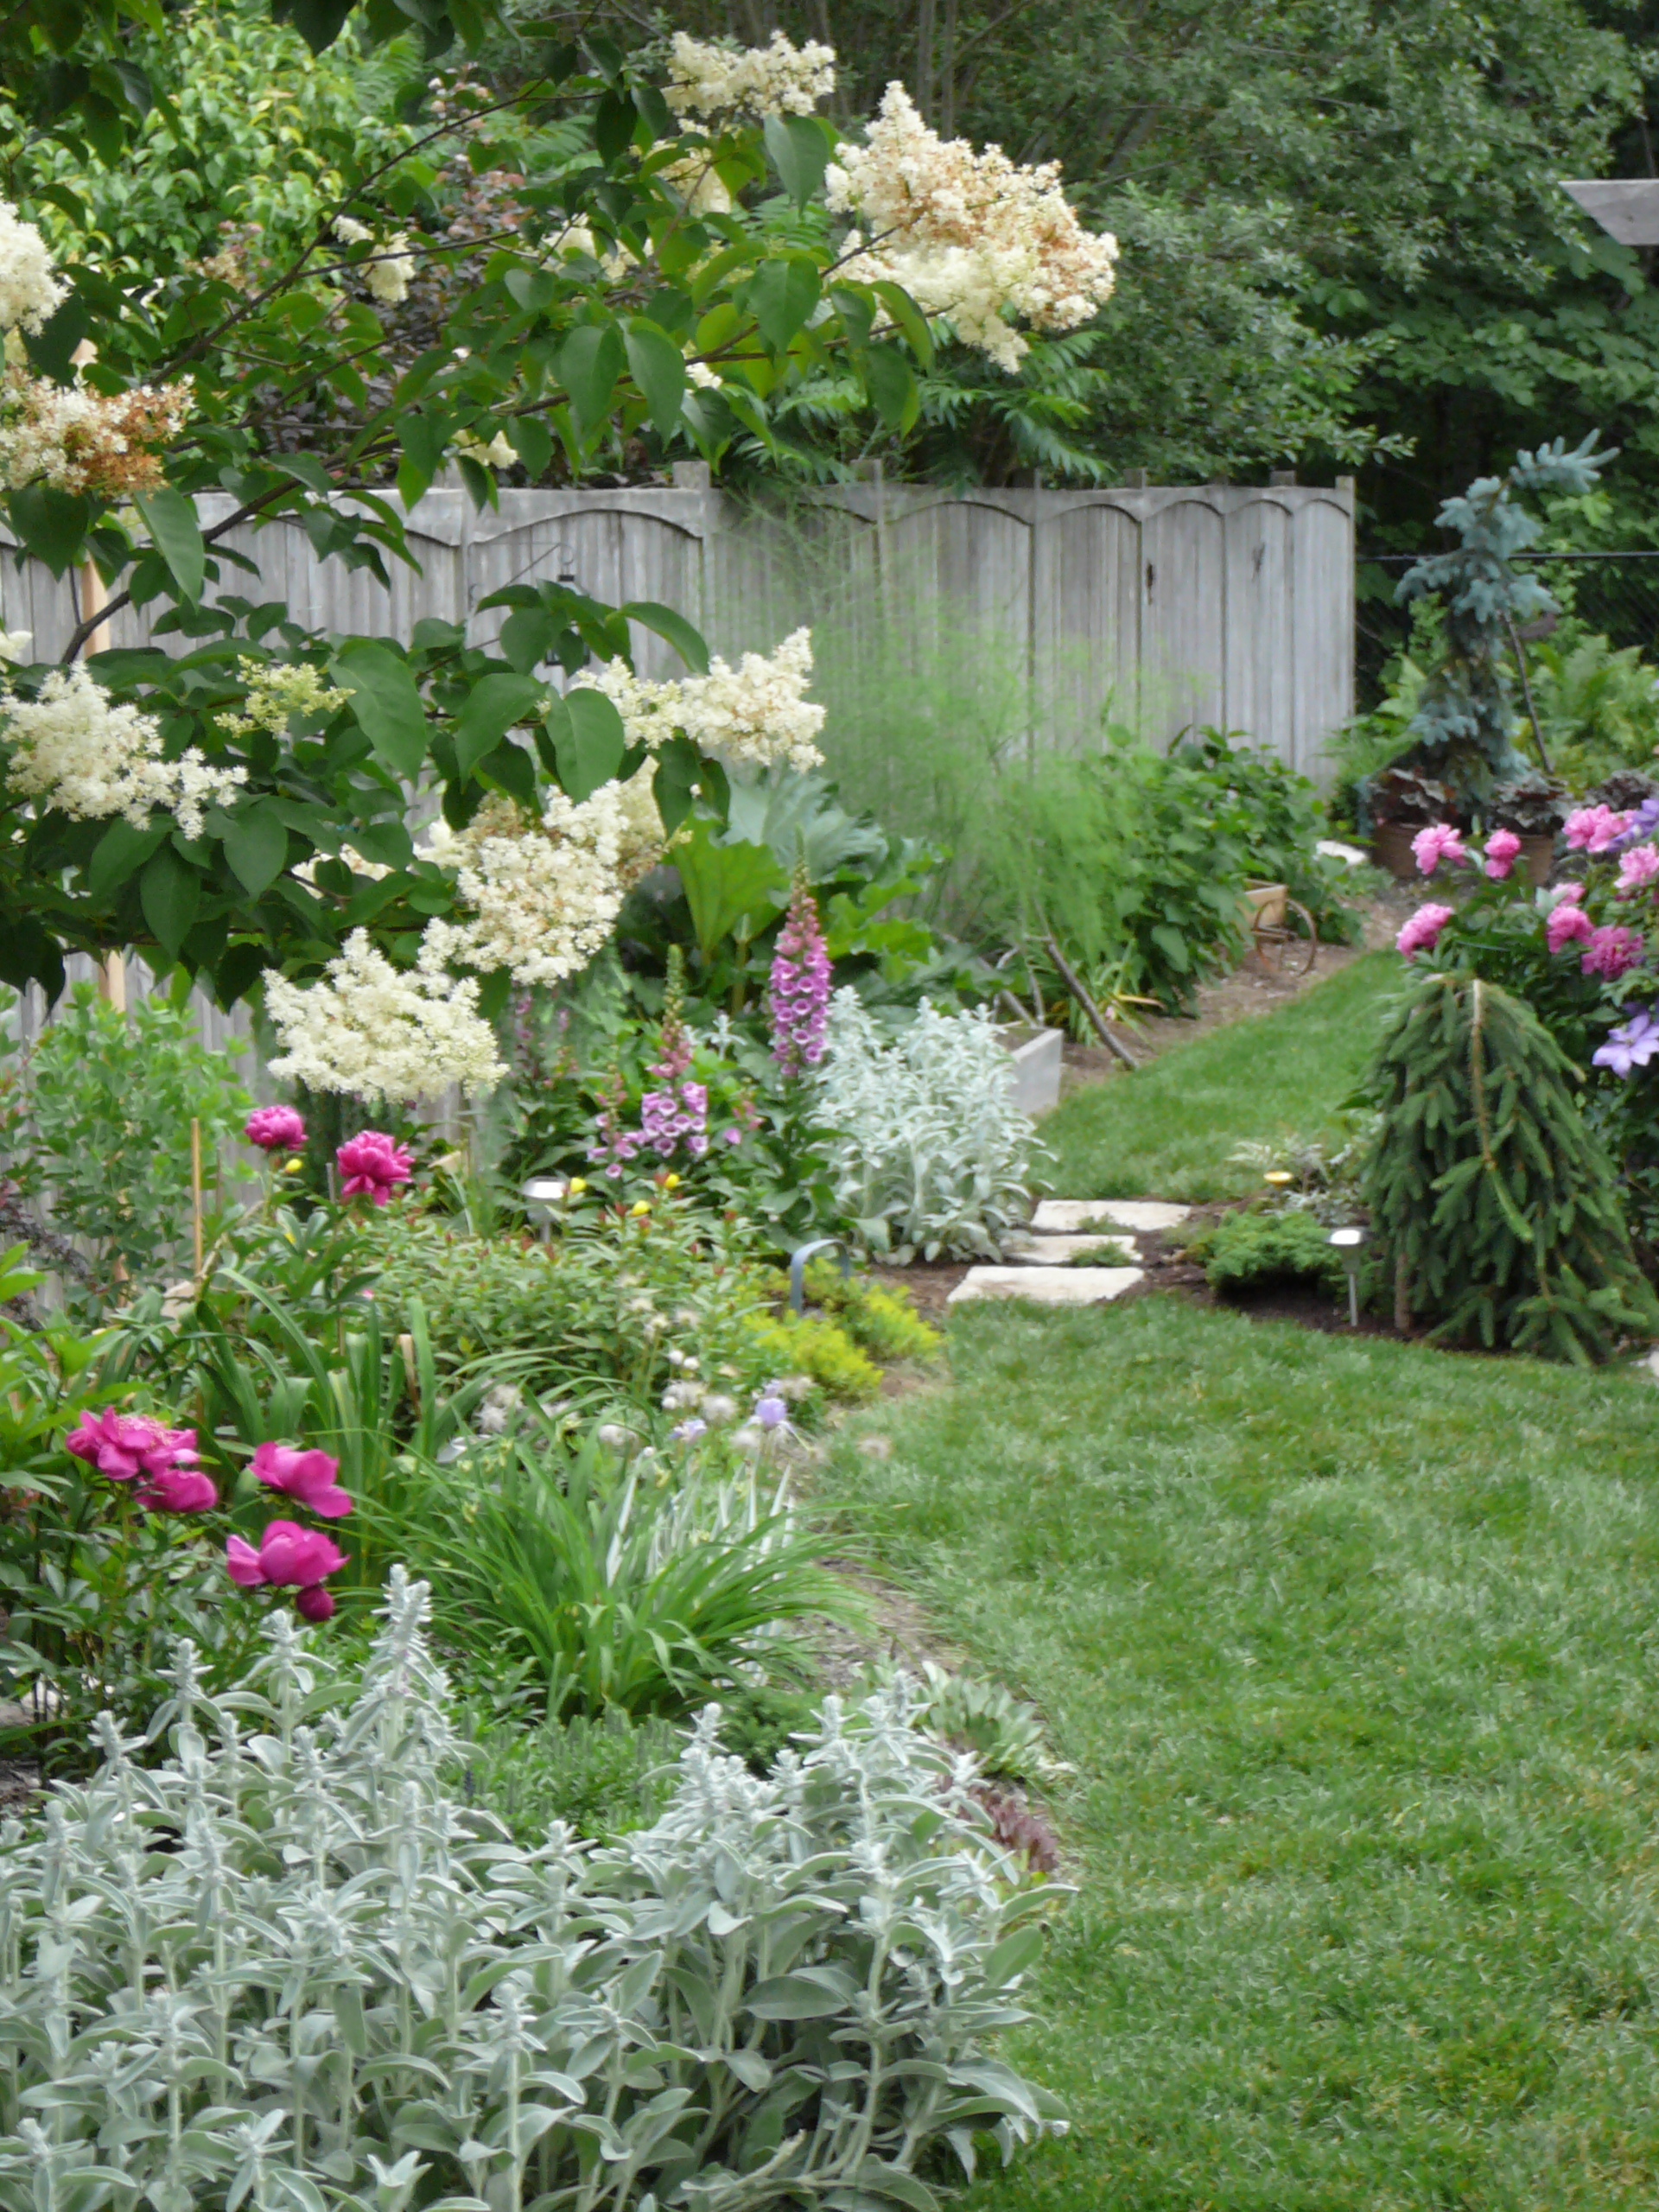 march 2011 ottawa garden design garden designer started in